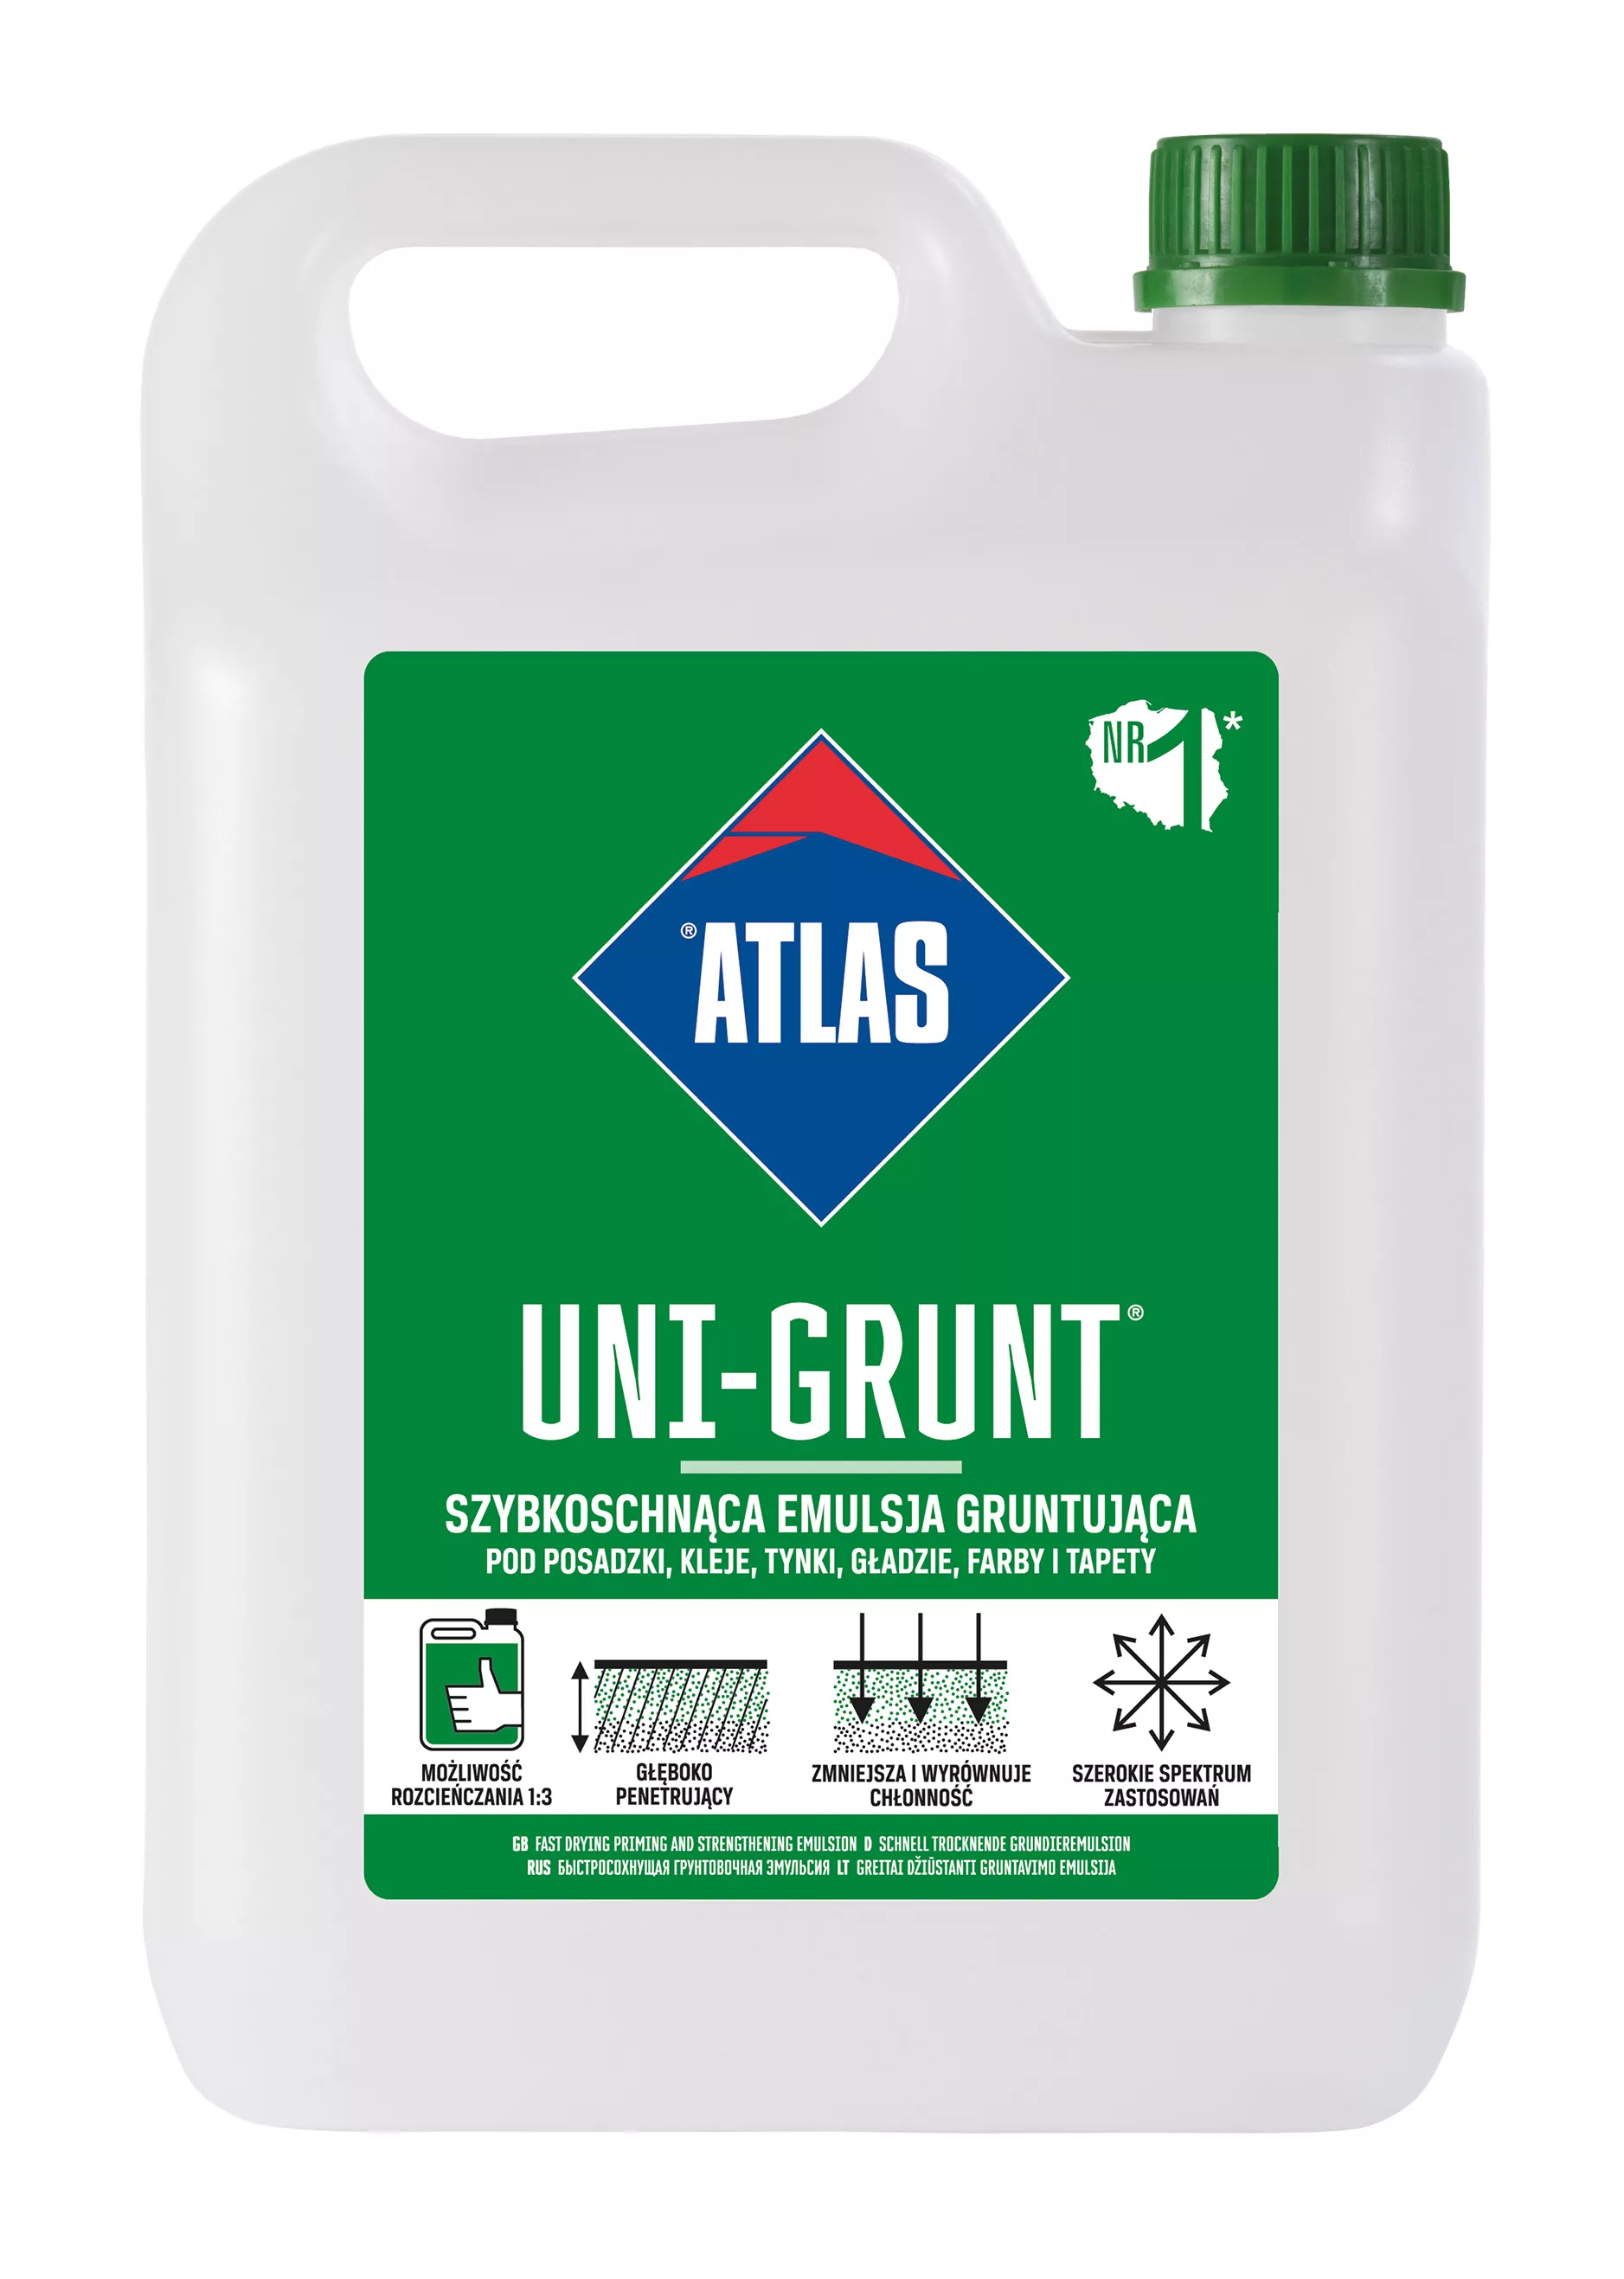 Atlas Uni-Grunt emulsja gruntująca 5 kg